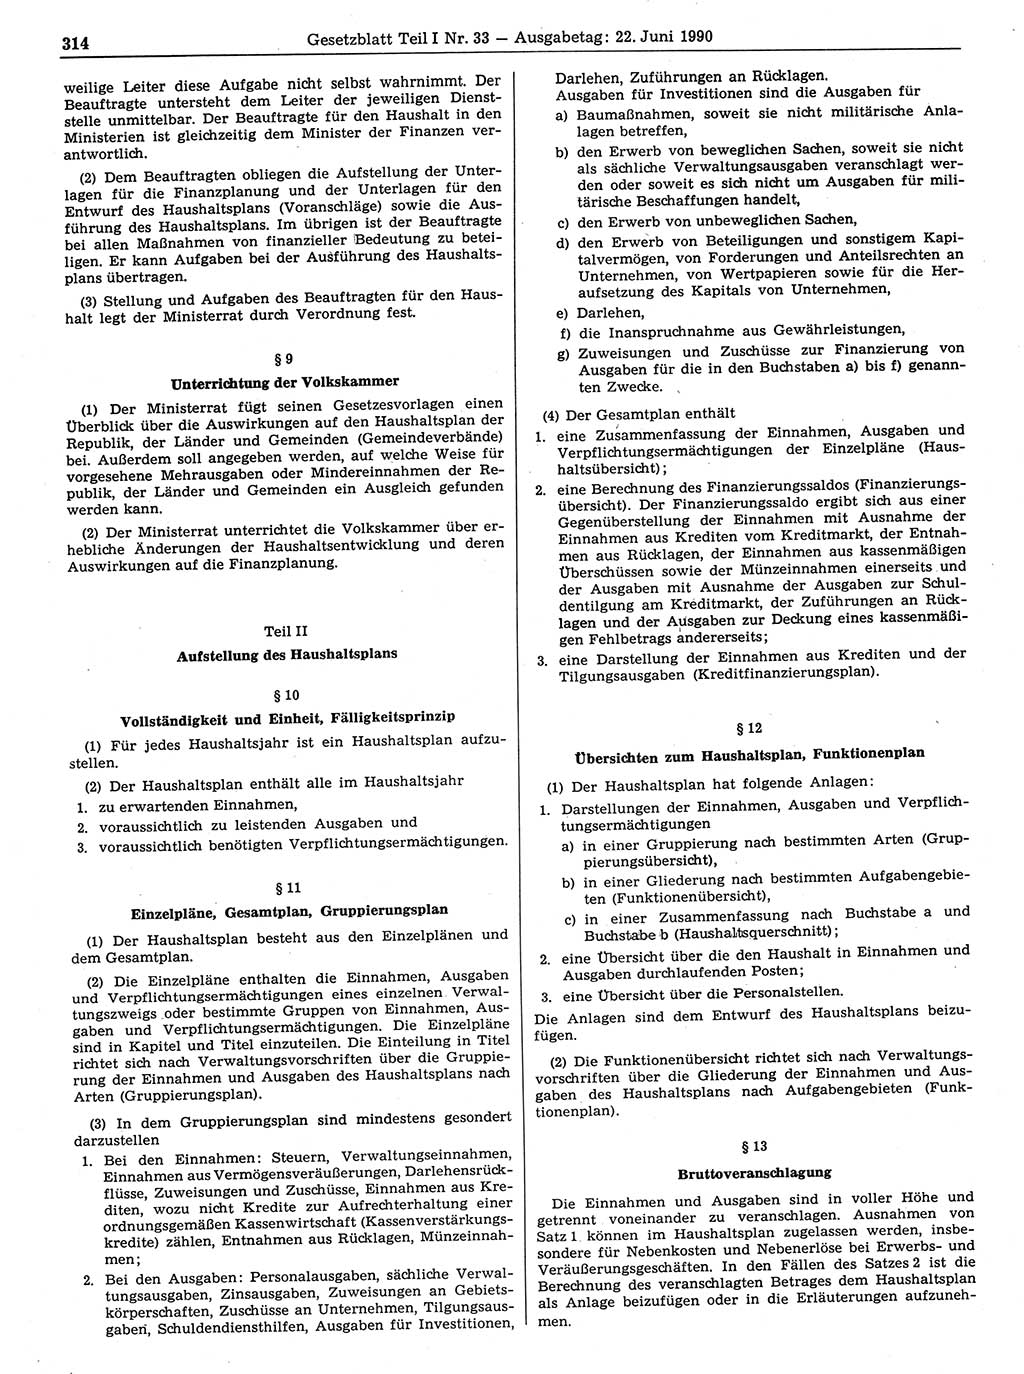 Gesetzblatt (GBl.) der Deutschen Demokratischen Republik (DDR) Teil Ⅰ 1990, Seite 314 (GBl. DDR Ⅰ 1990, S. 314)